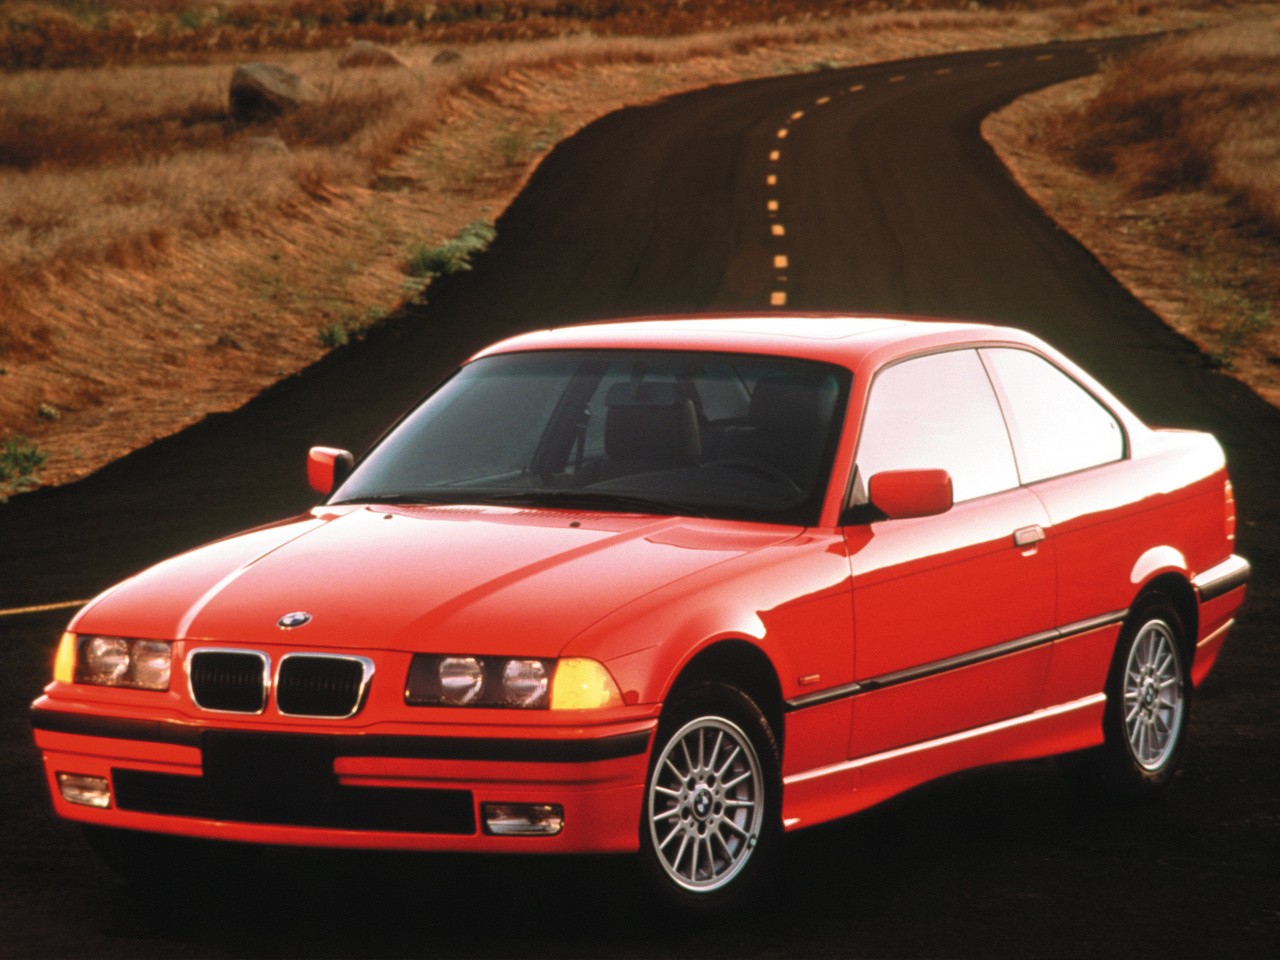 BMW 3 Series Coupe (E36) - 1992, 1993, 1994, 1995, 1996, 1997, 1998